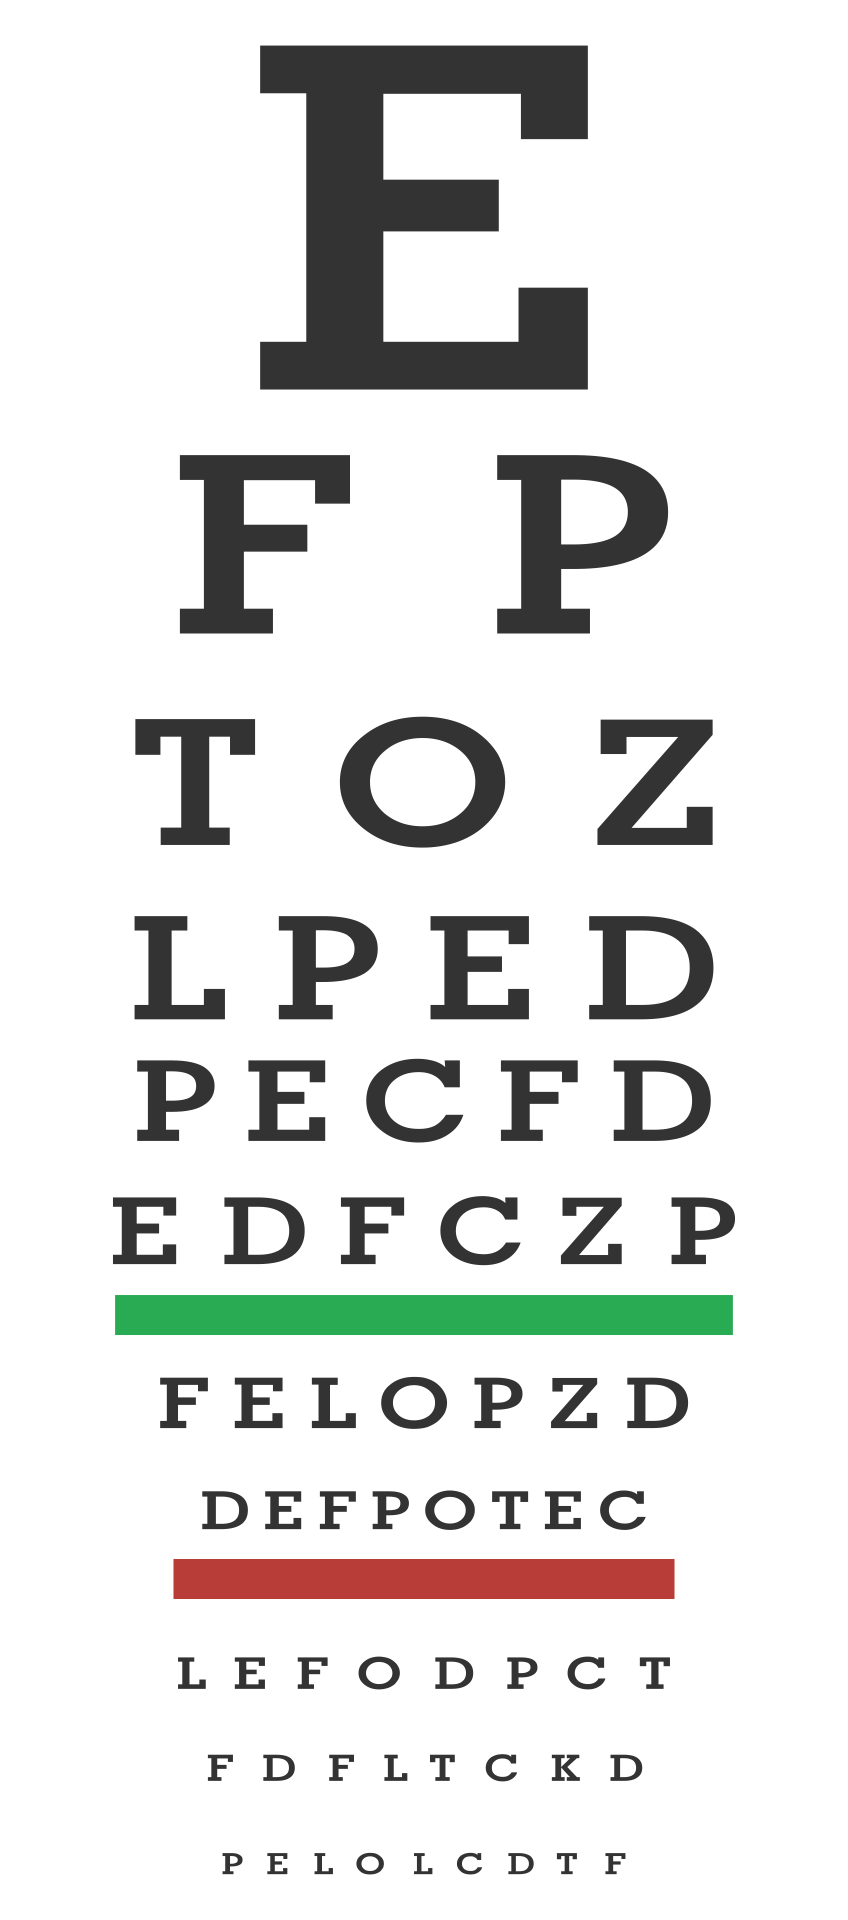 free-printable-kindergarten-eye-chart